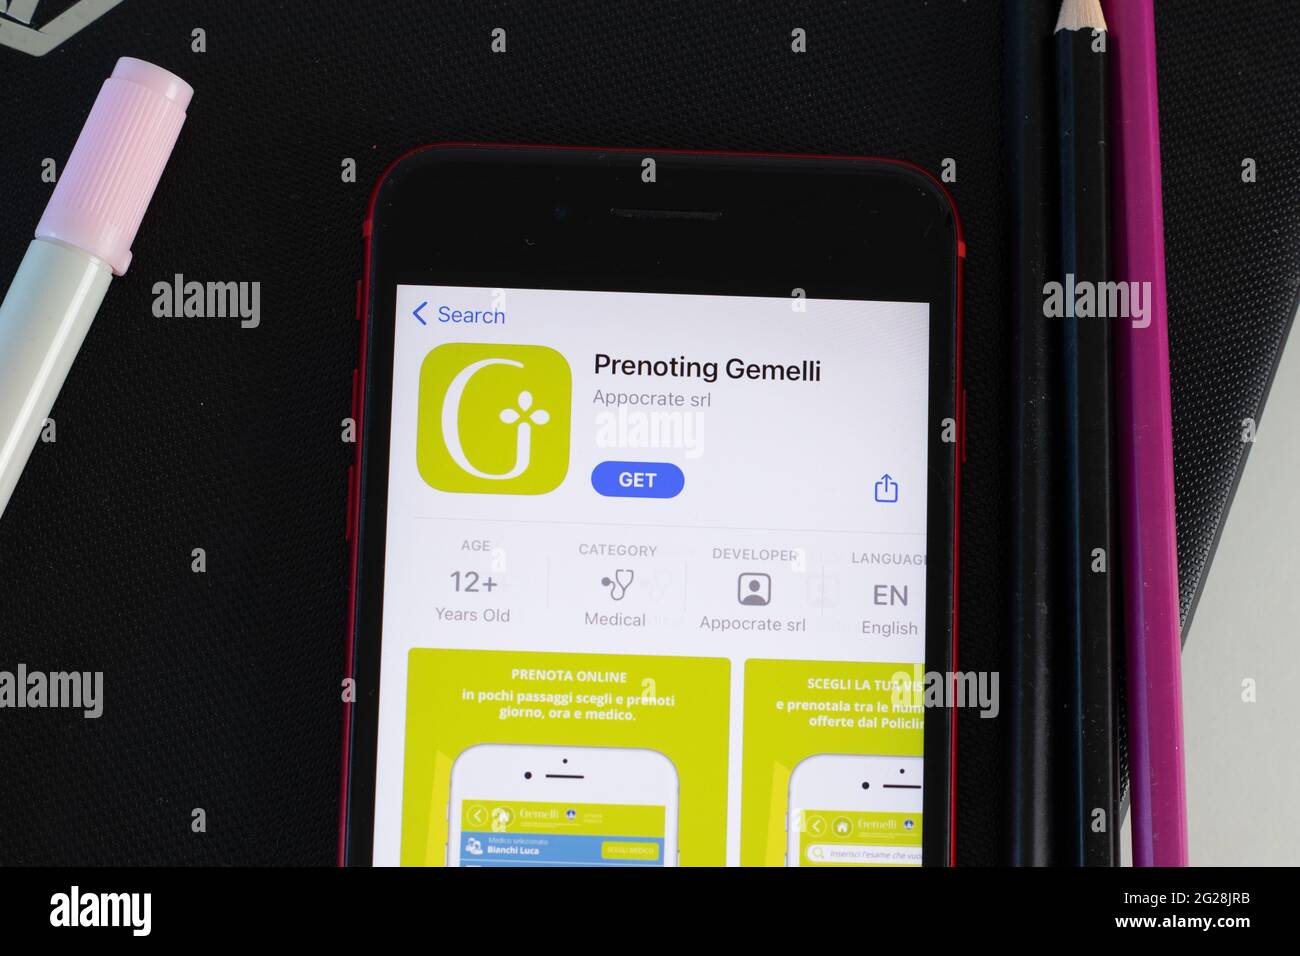 New York, USA - 1. Juni 2021: Darstellung des Logos der Gemelli-App für Mobilgeräte auf dem Telefonbildschirm, Nahaufnahme-Symbol, illustrative redaktionelle Darstellung Stockfoto